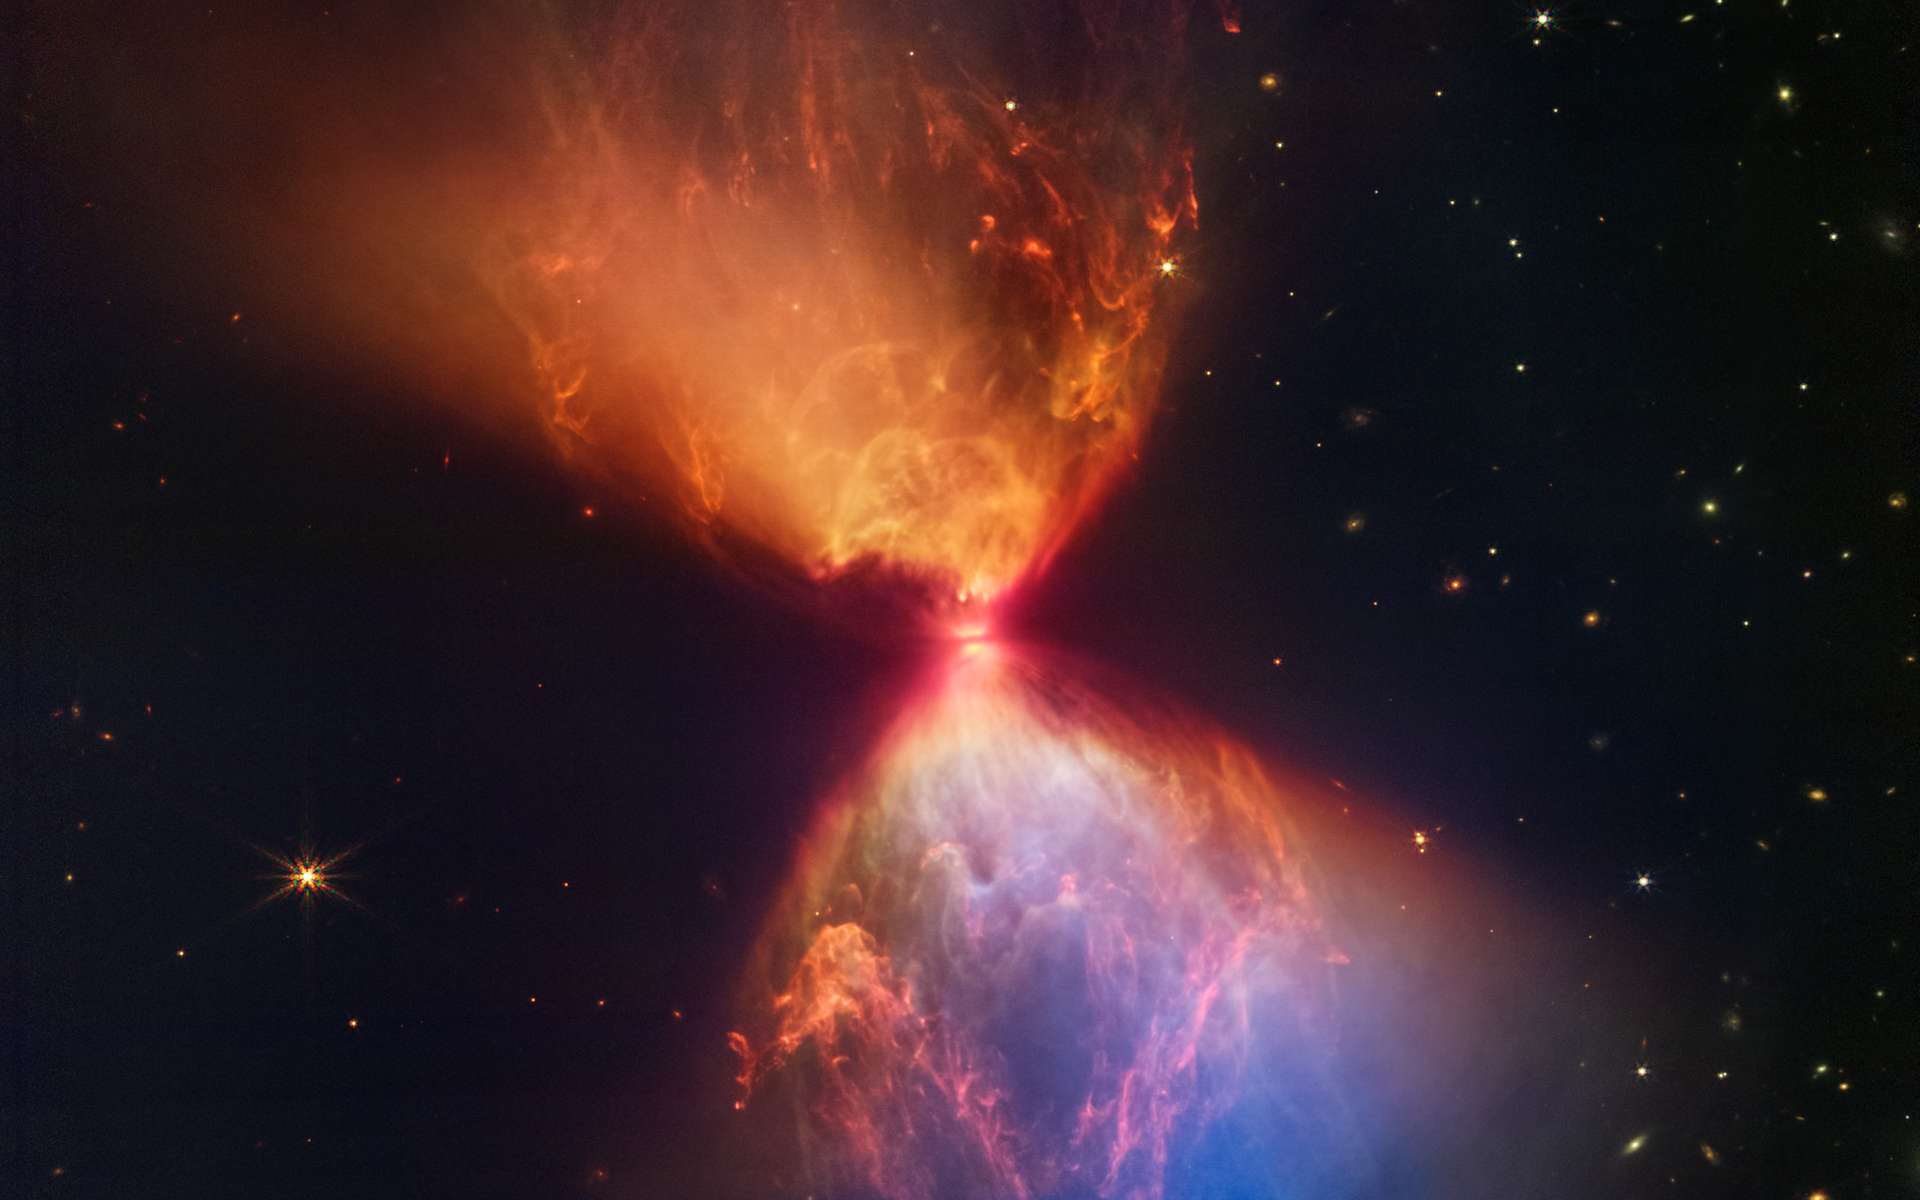 Le télescope James-Webb a photographié un sablier formé par une étoile en train de naître !